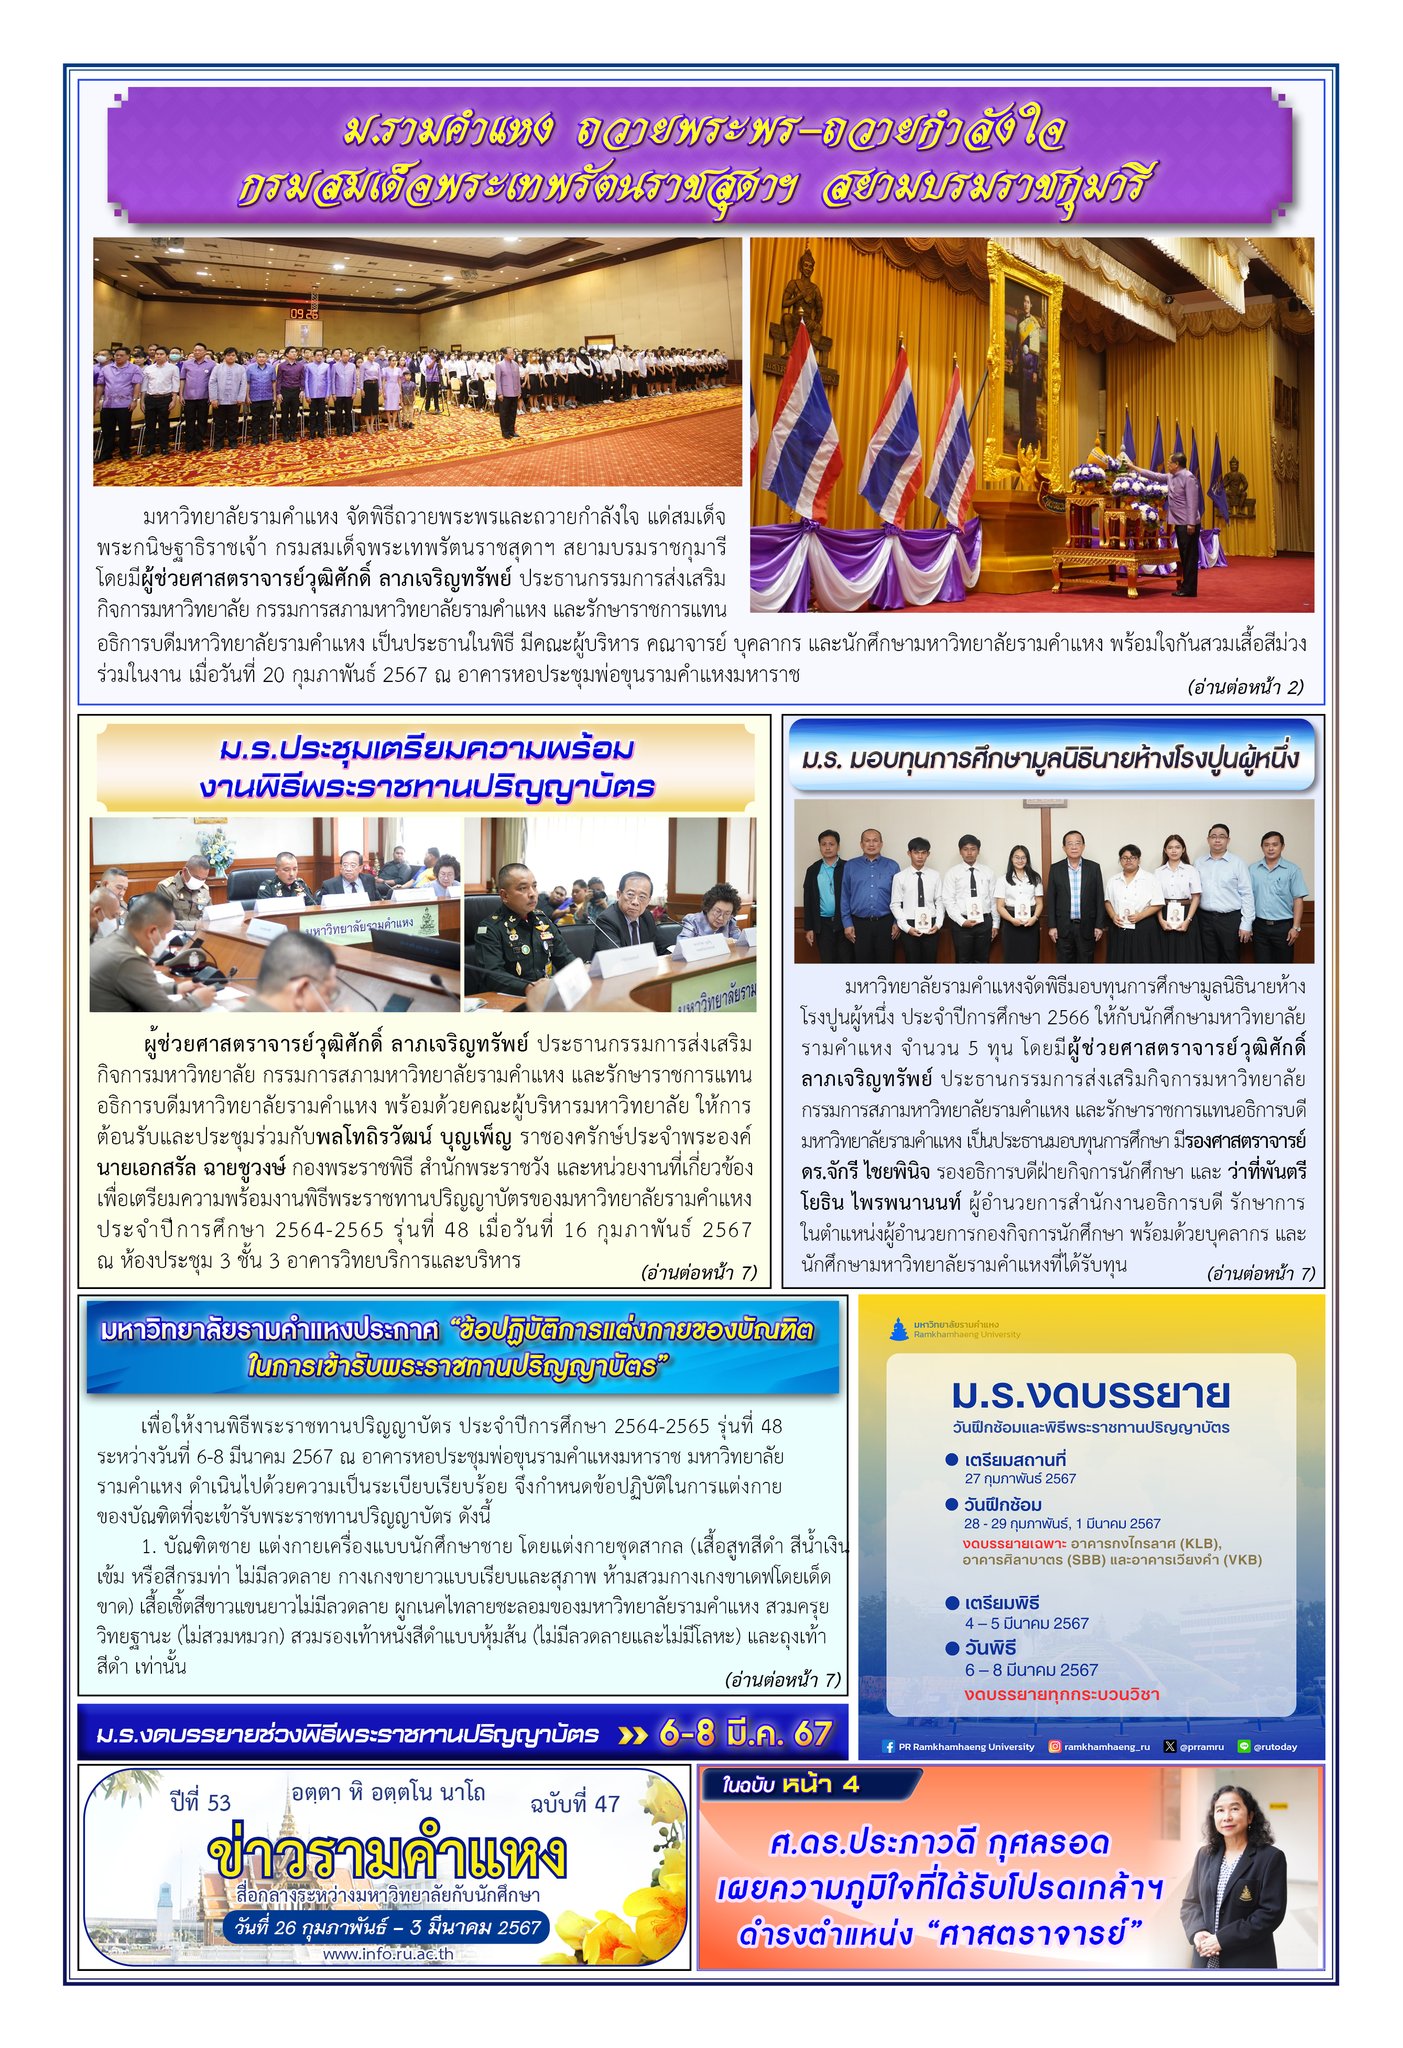 ข่าวรามคำแหง ปีที่ 53 ฉบับที่ 47 วันที่ 26 กุมภาพันธ์-3 มีนาคม 2567 / Ramkhamhaeng News Year 53, Issue 47, 26 February-3 March 2024